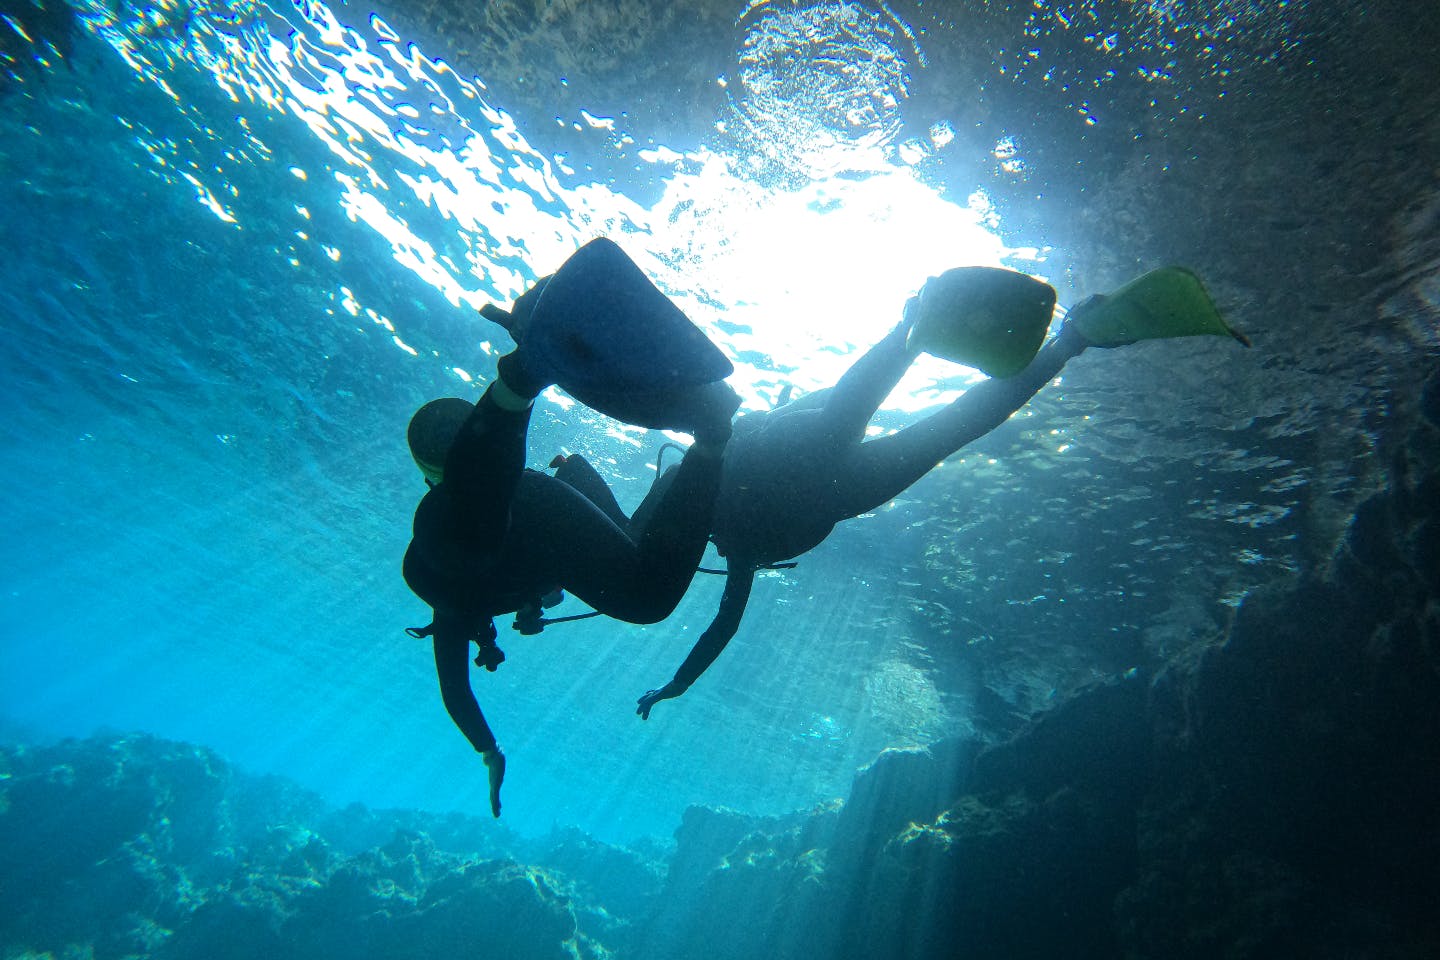 沖縄 青の洞窟 体験ダイビング 最新gopro9導入 1万人来店記念 手ぶらでok 完全貸切 写真動画無料すぐ携帯転送 団体割引あり アソビュー